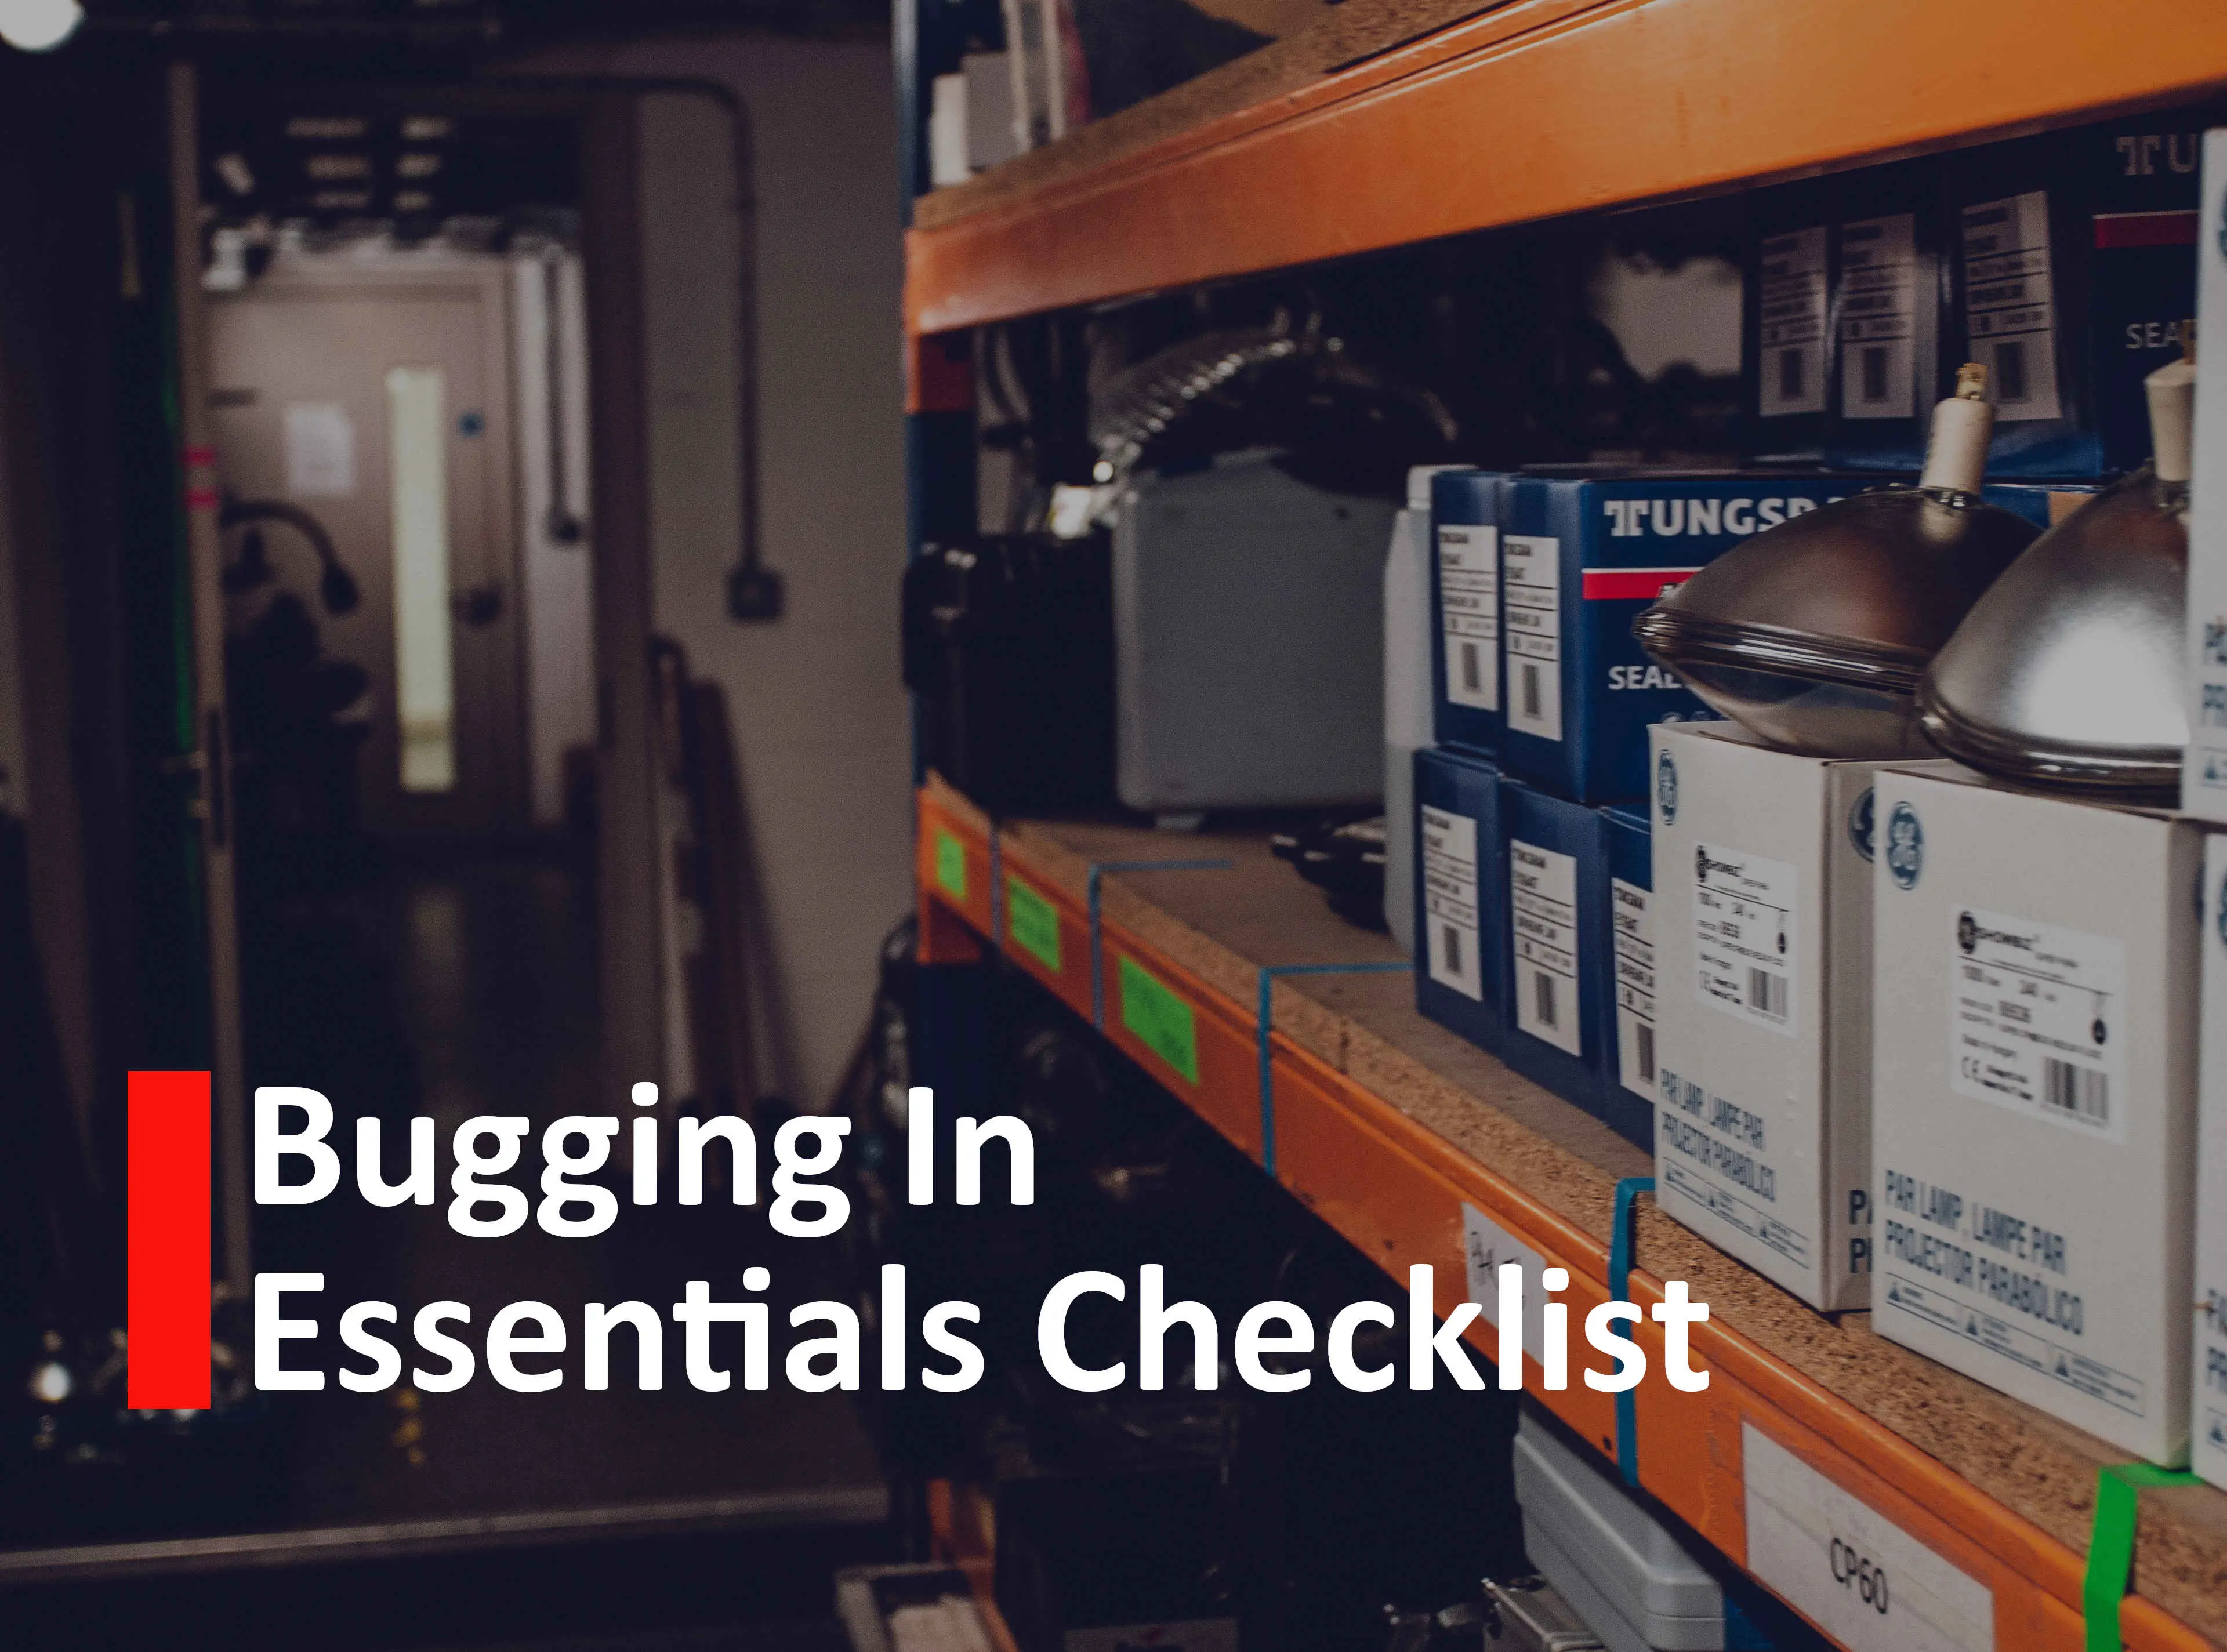 Bugging in essentials checklist